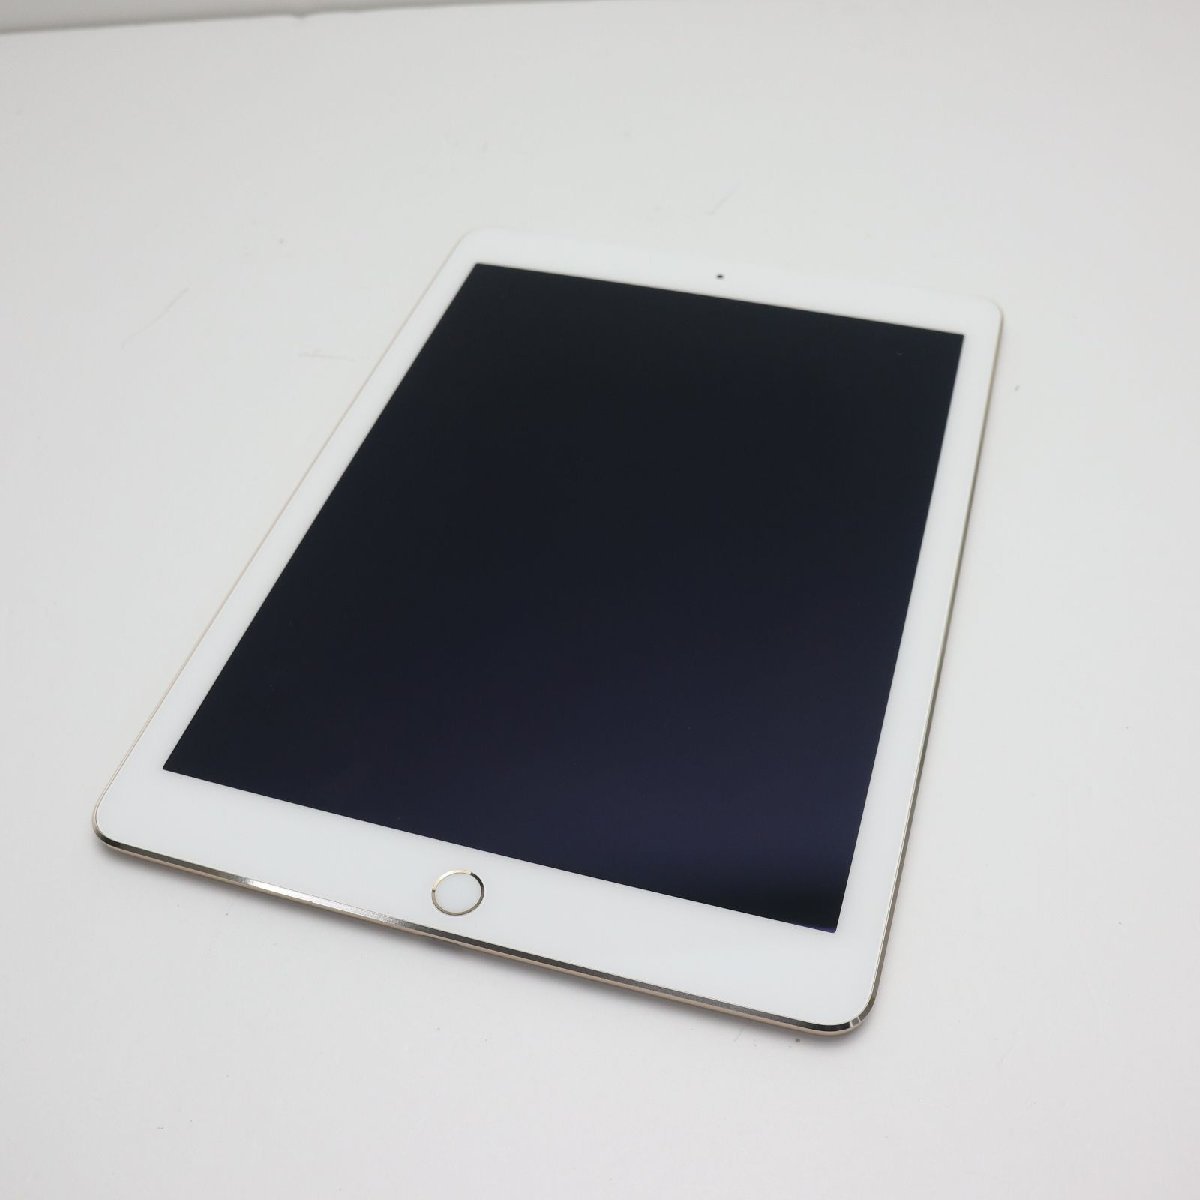 超美品 docomo iPad Air 2 Cellular 64GB ゴールド 即日発送 タブレットApple 本体 あすつく 土日祝発送OKのサムネイル